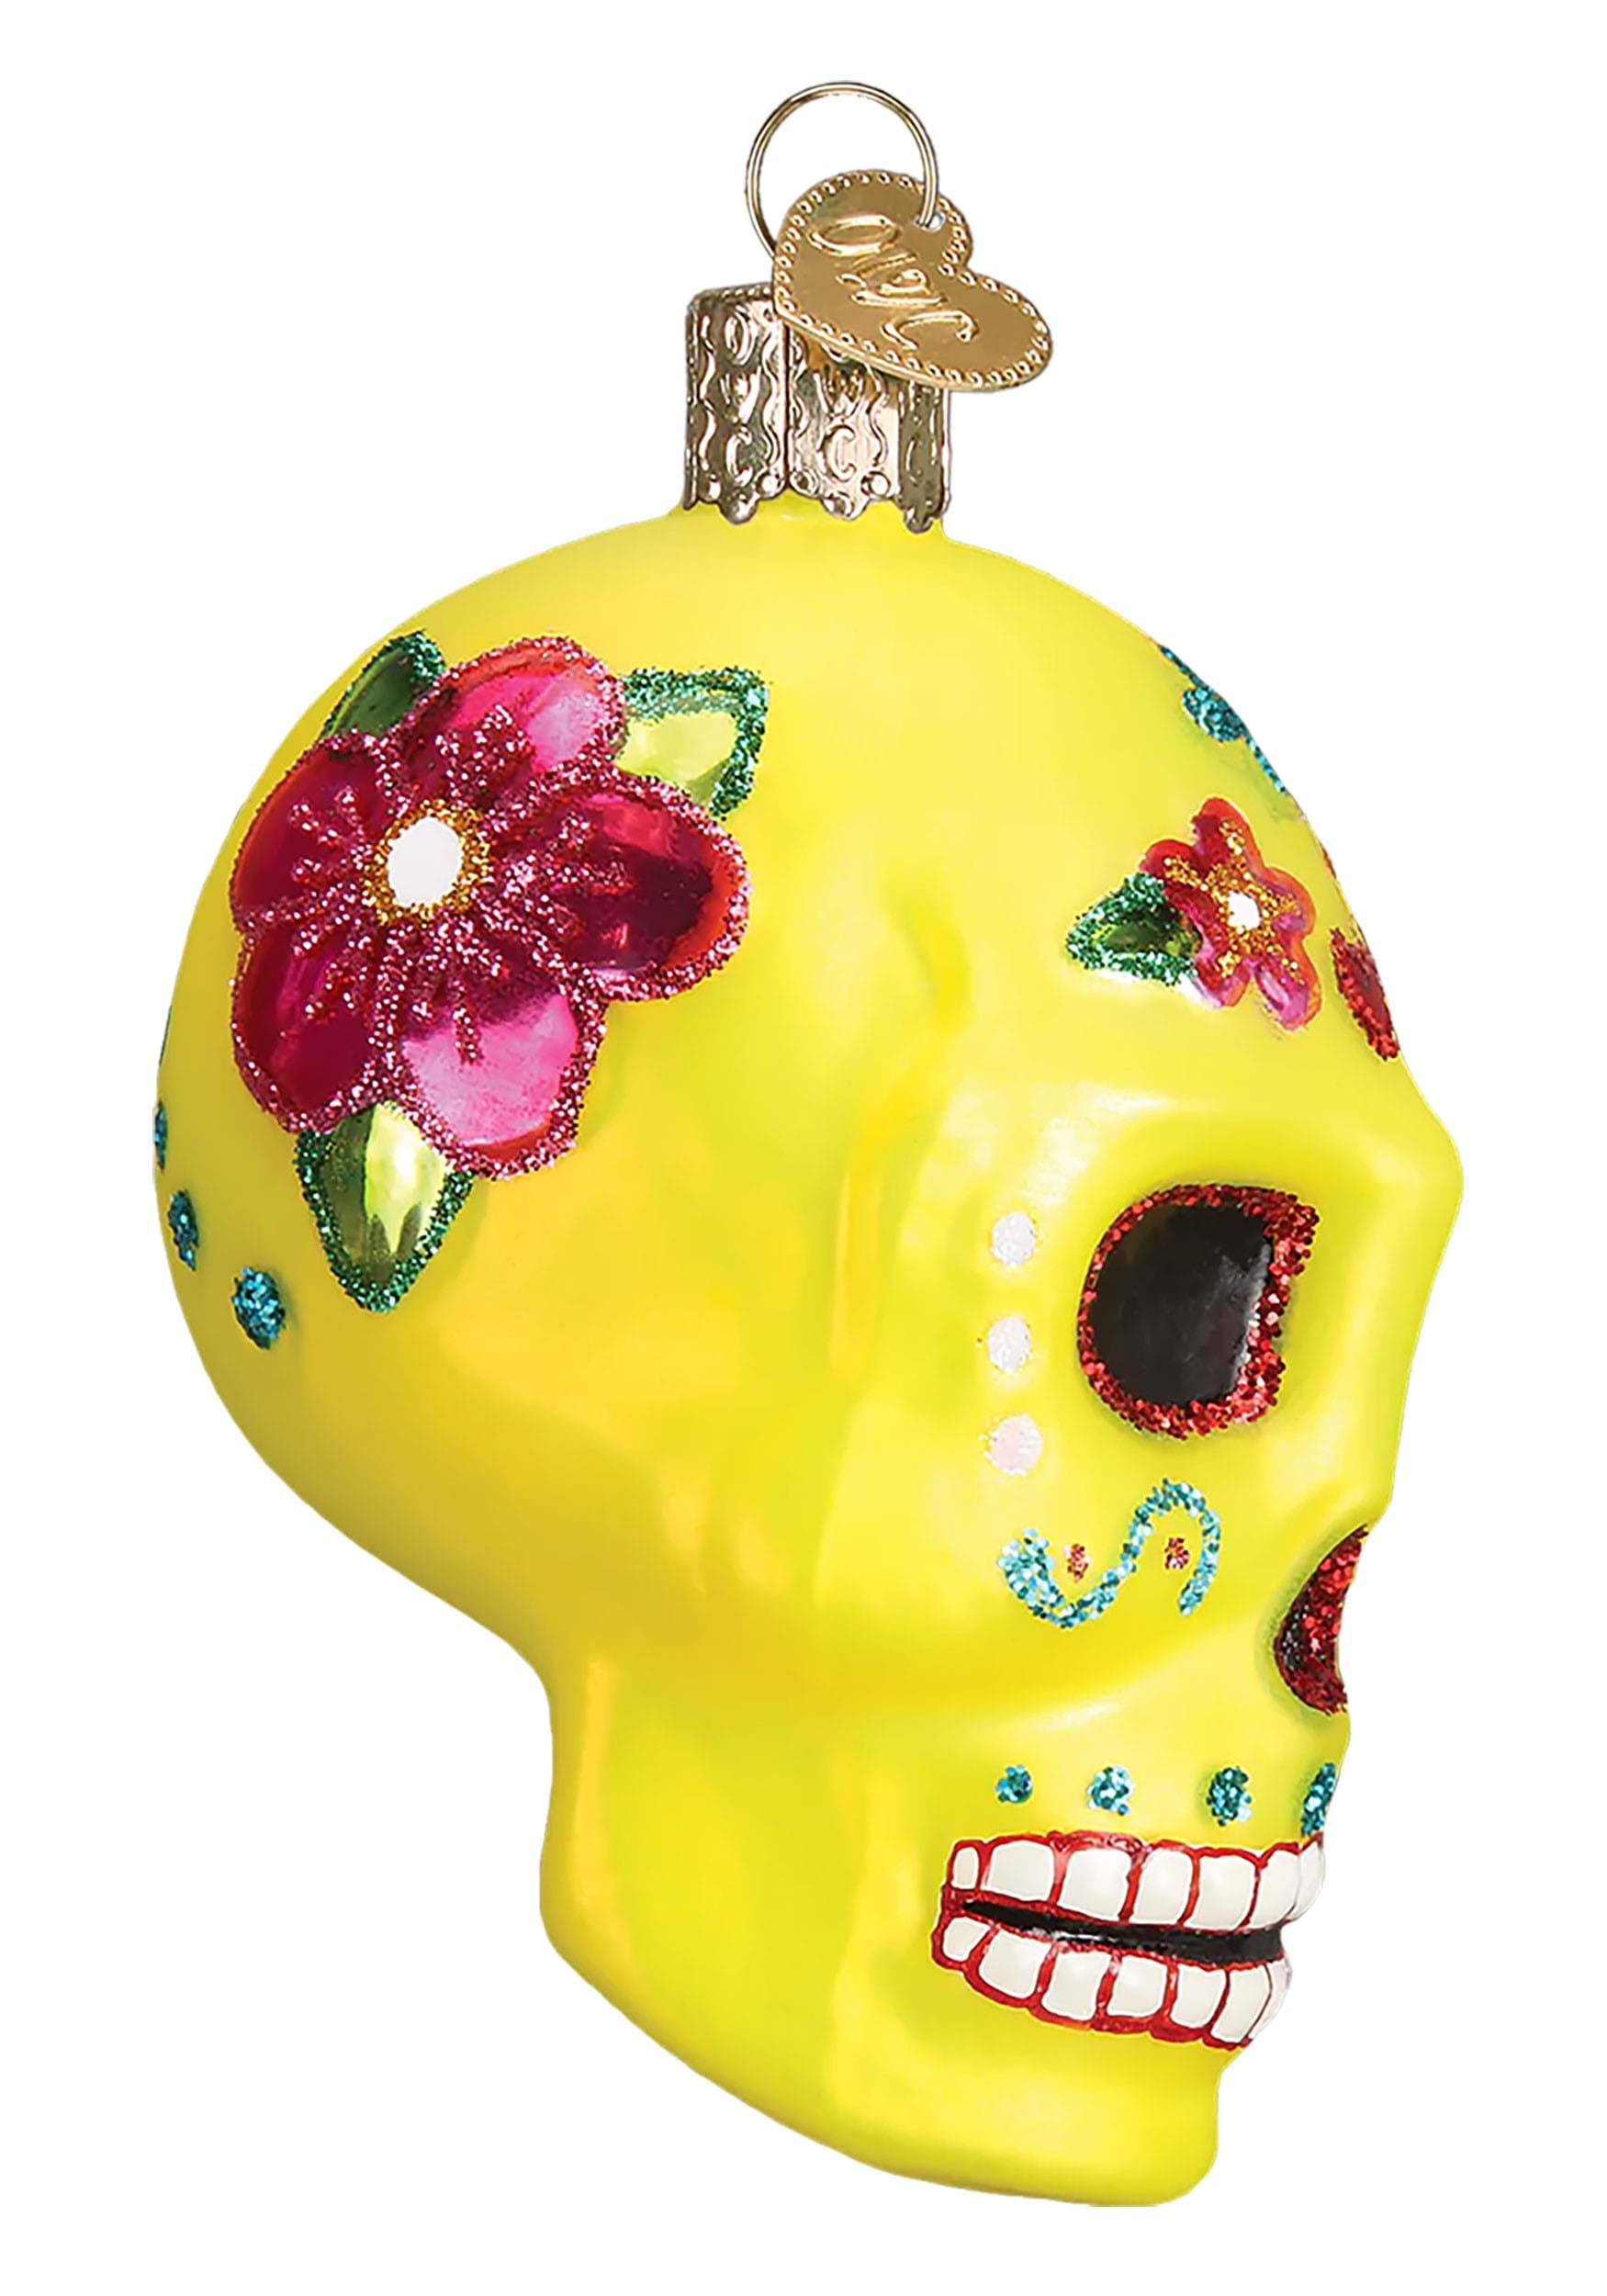 Sugar Skull Ornament